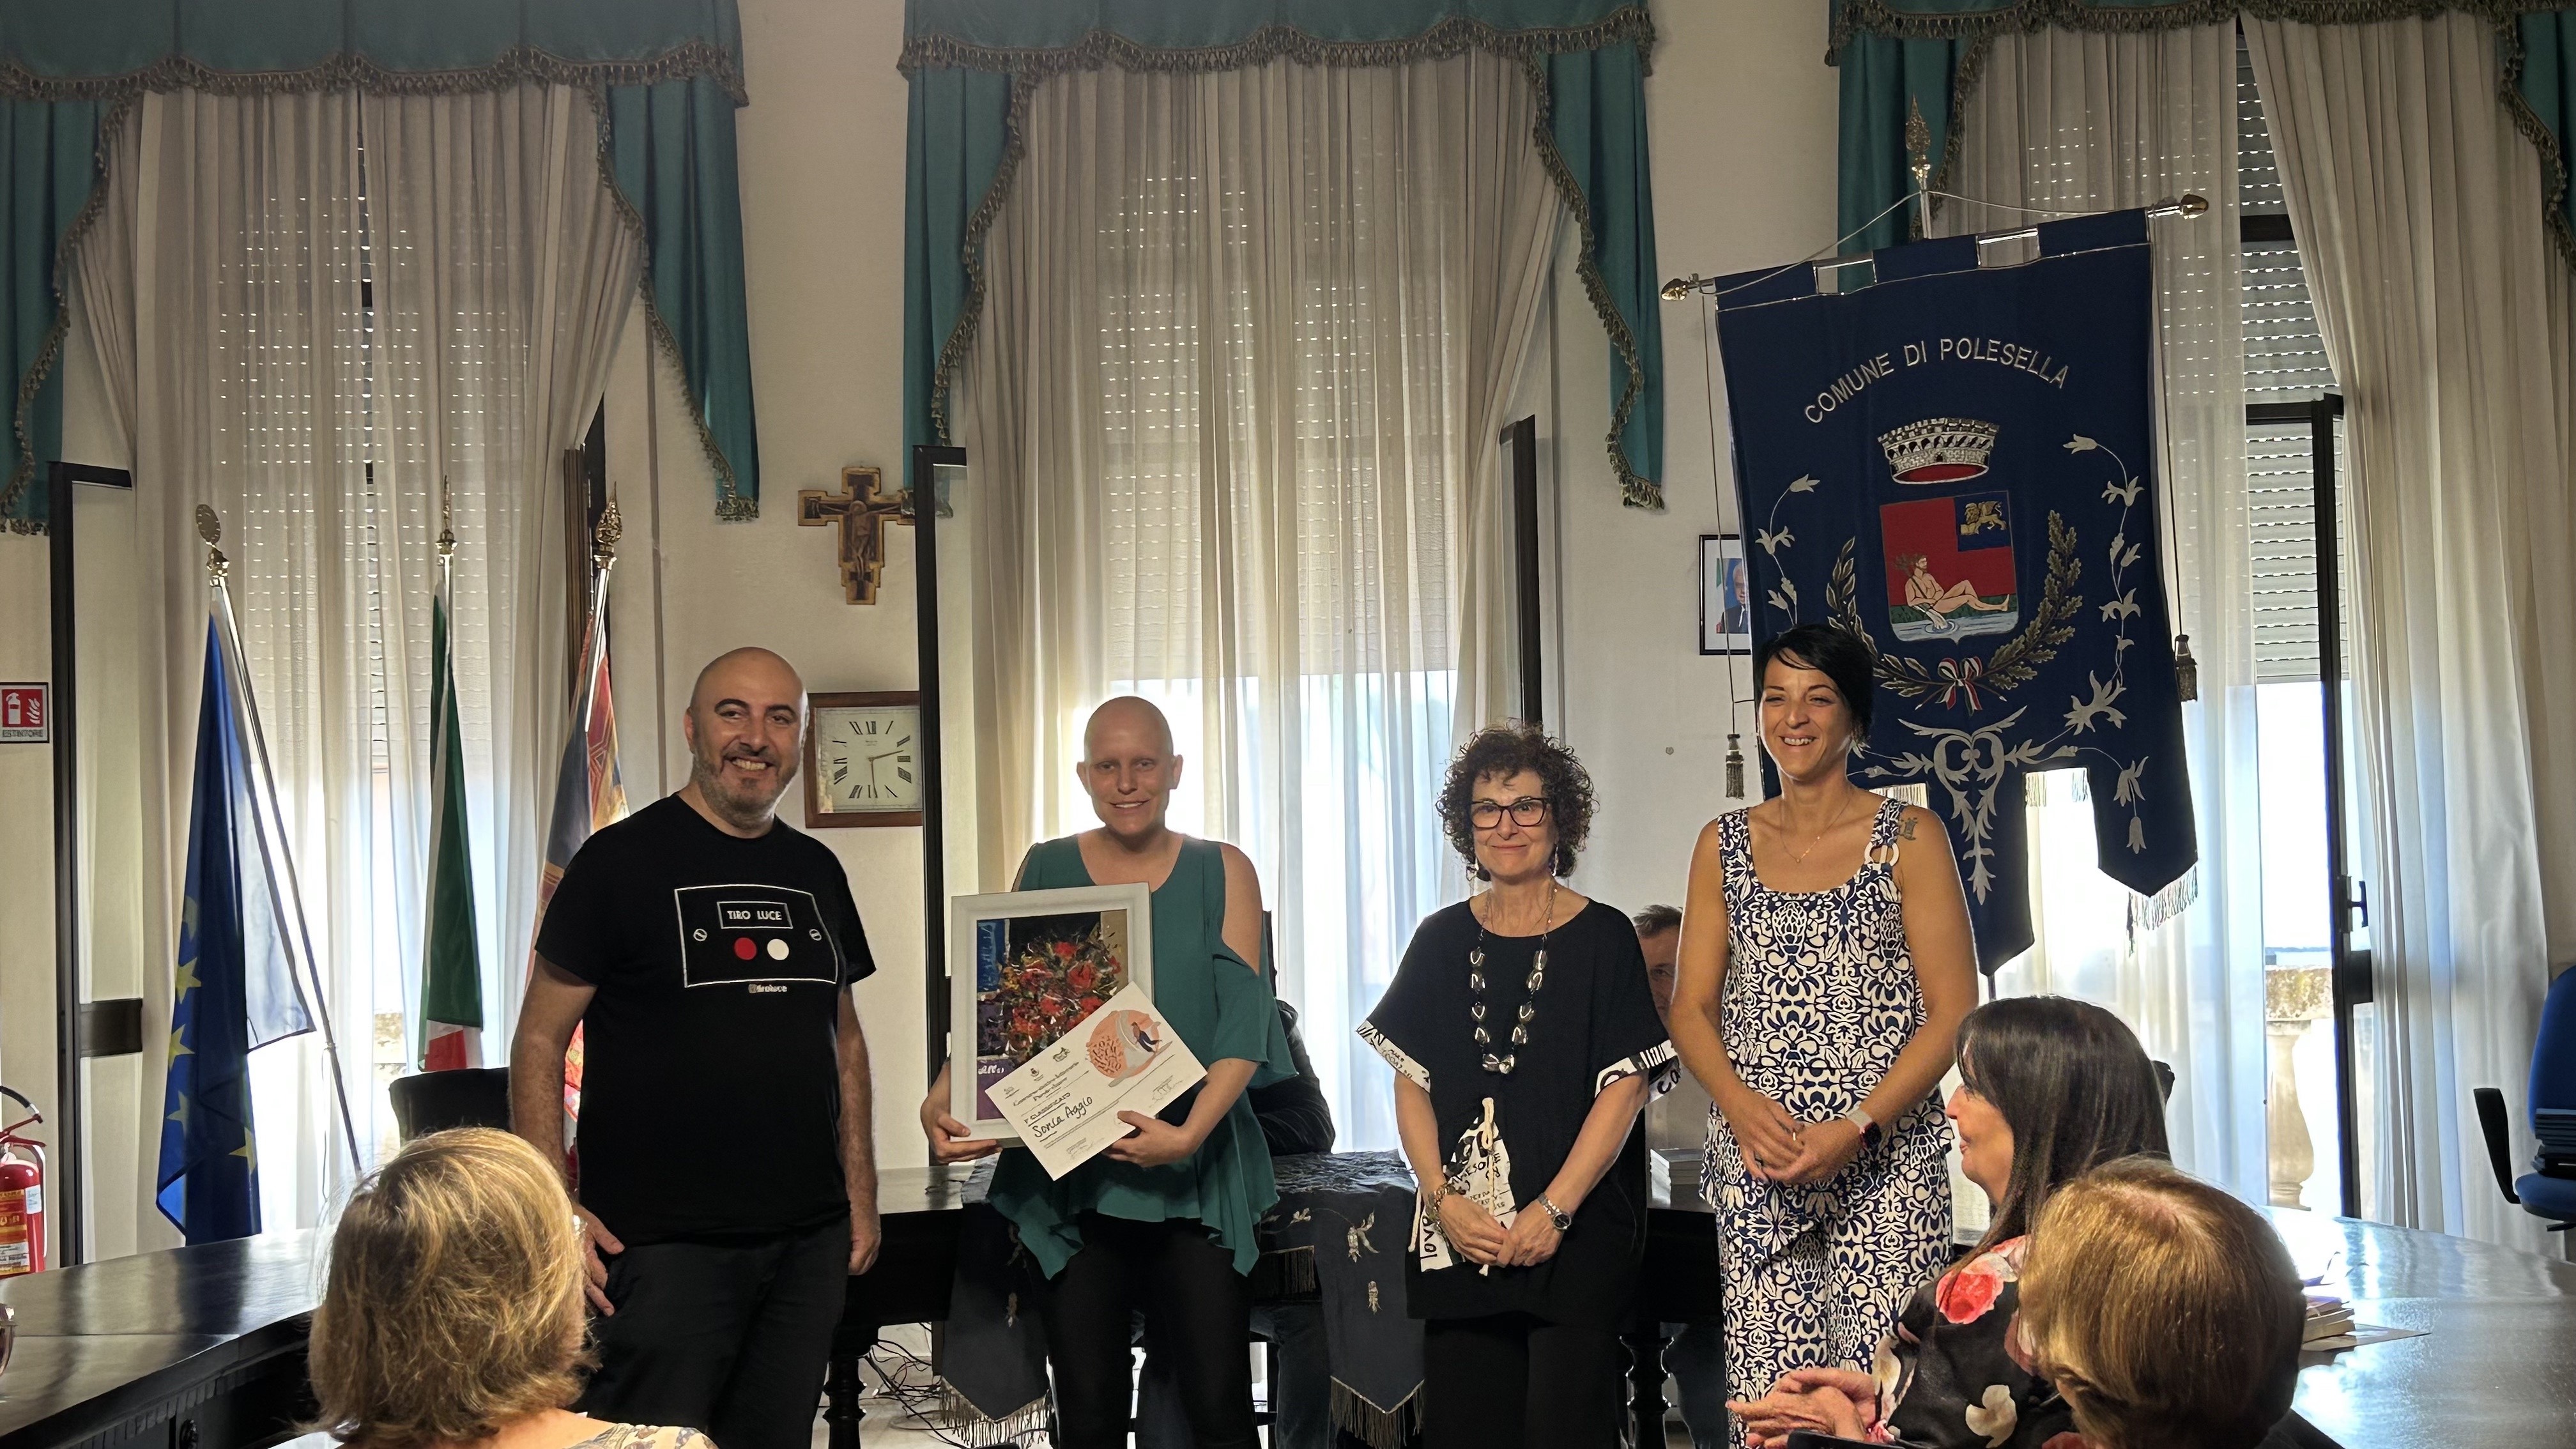 Concorso Parole Chiave: premiati nella sala consiliare del municipio di Polesella i vincitori di opere edite, inedite e saggistica storica